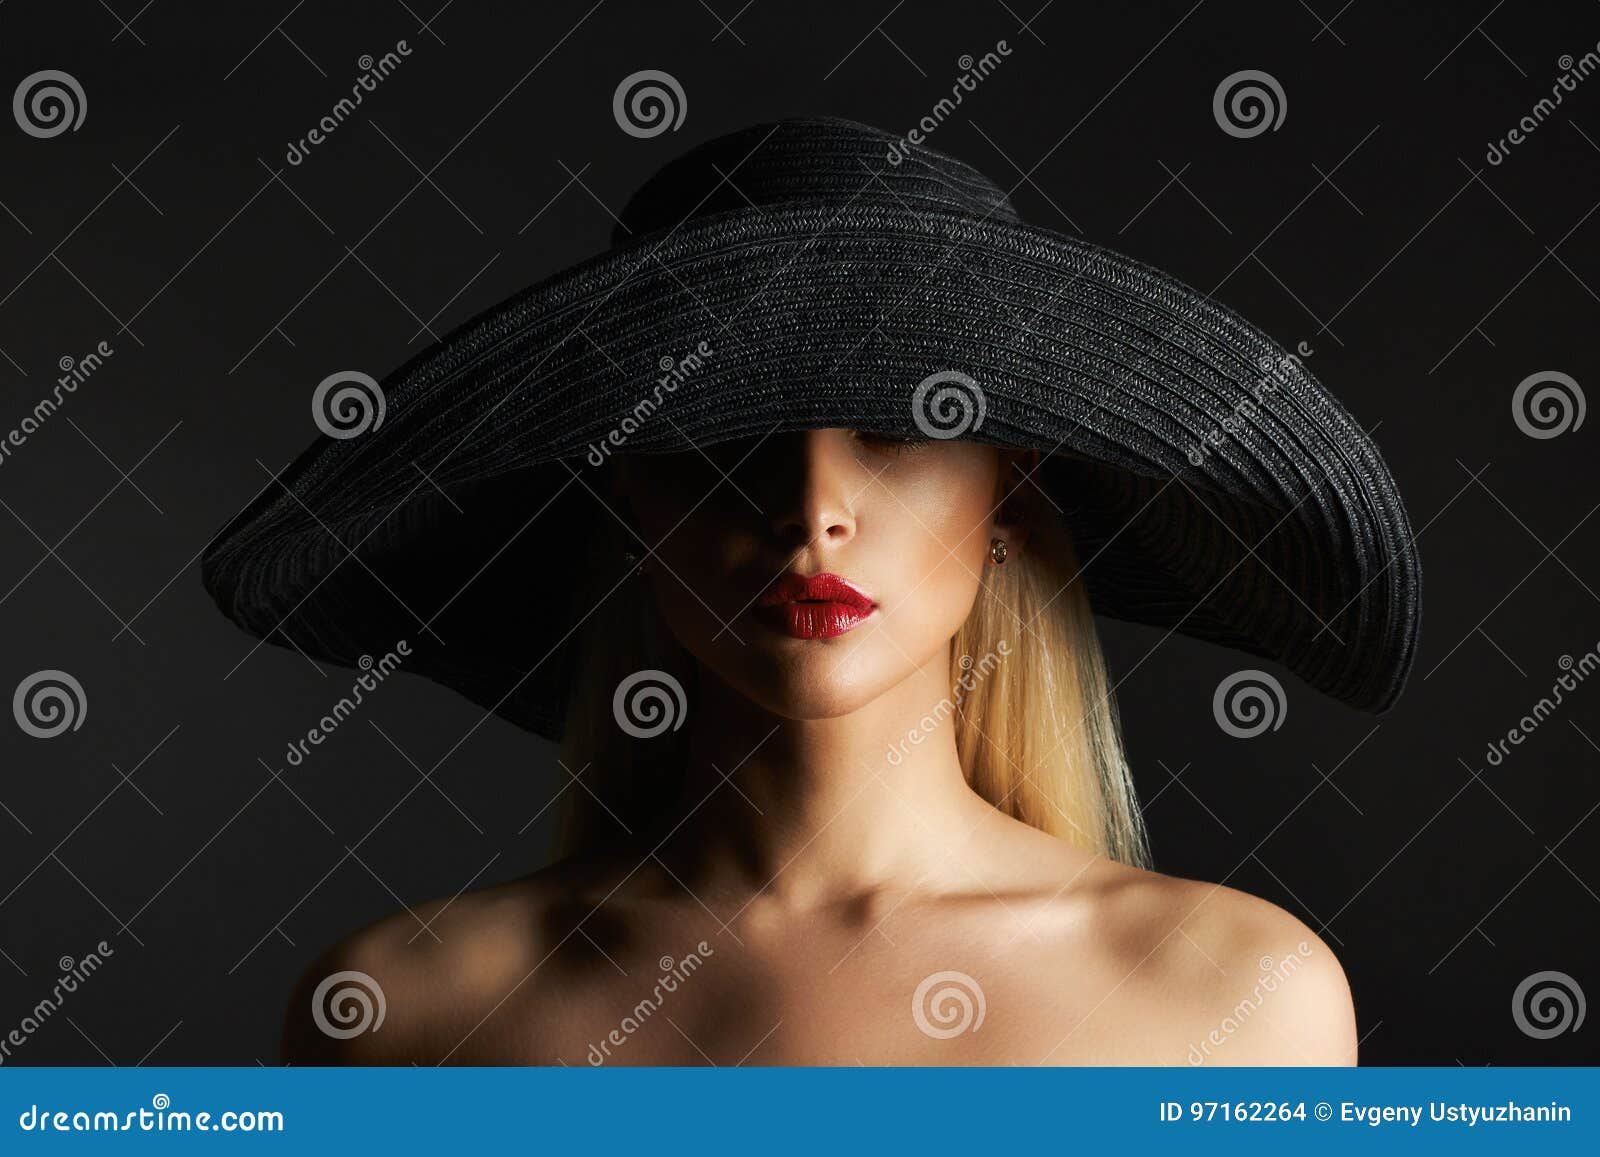 udobnost, izazov - Page 16 Fashion-beauty-blonde-girl-hat-beautiful-young-woman-97162264